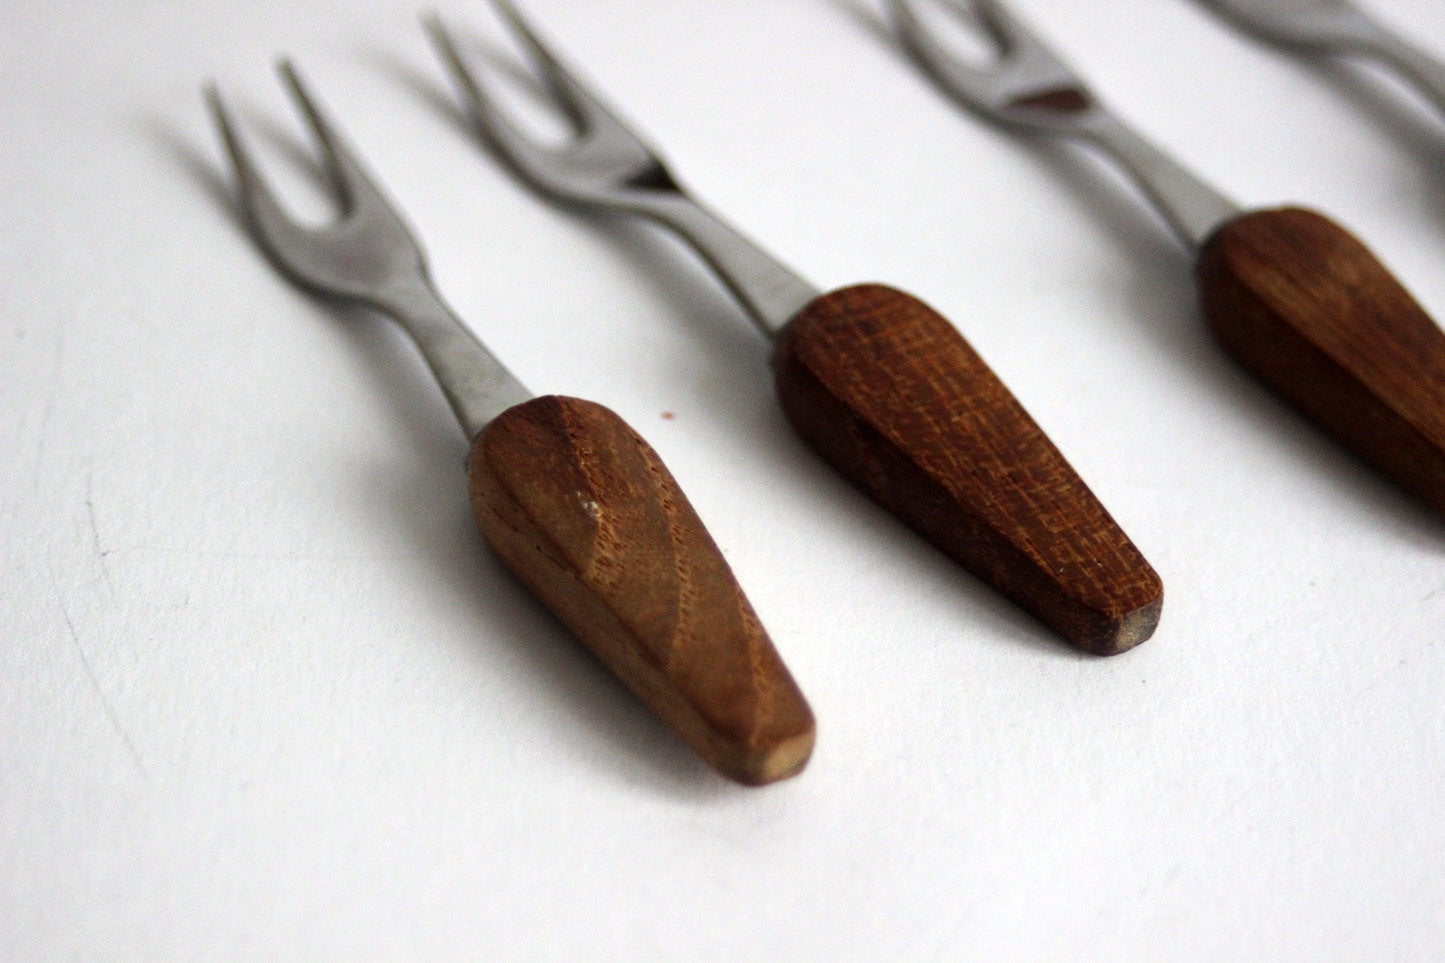 Vintage set of 6 forks with base in teak wood. Scandinavian Mid-Century design.